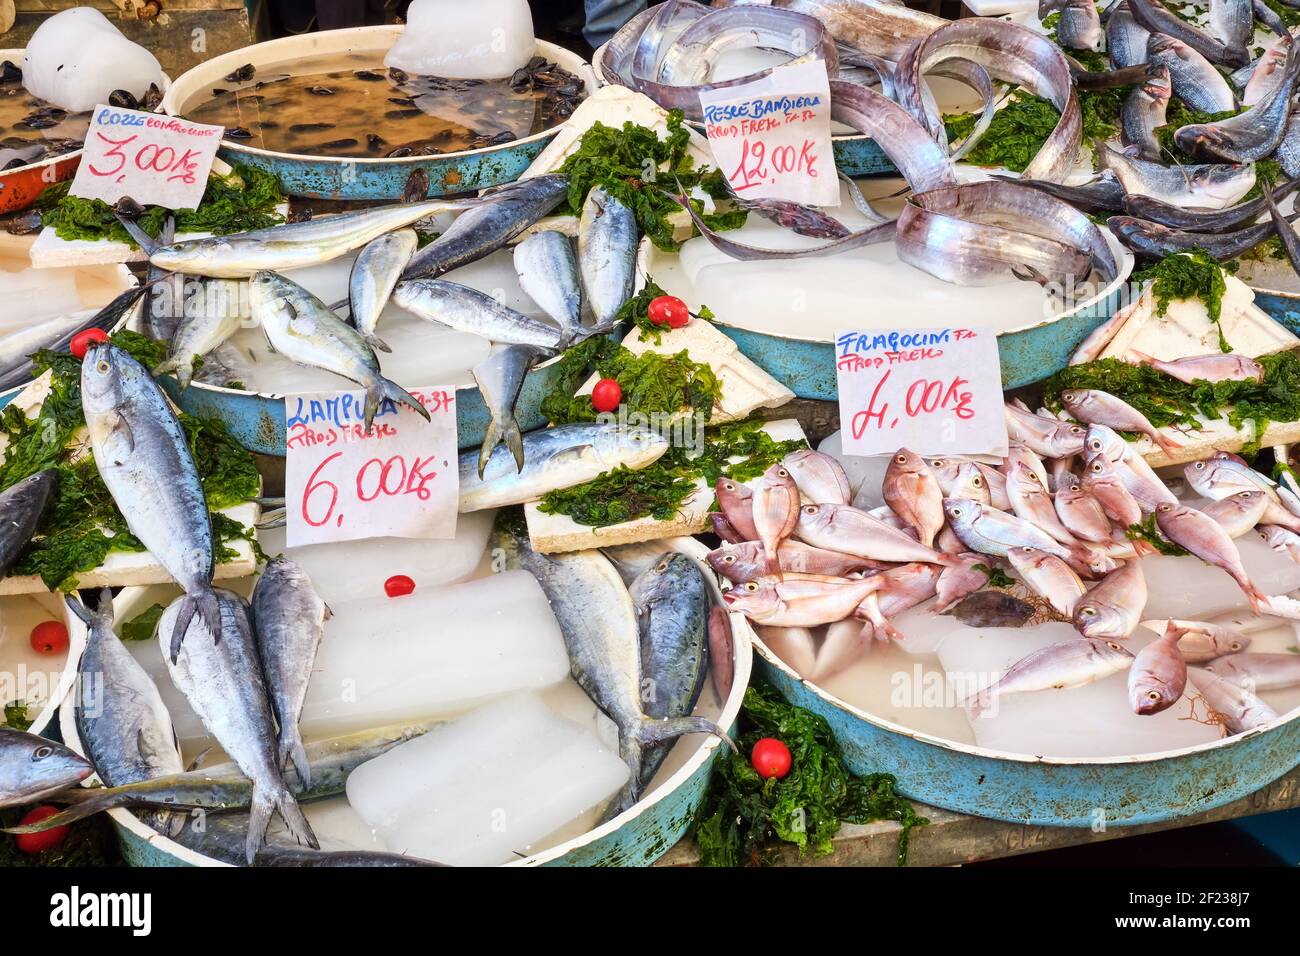 Mercato Del Pesce Di Napoli Immagini e Fotos Stock - Alamy